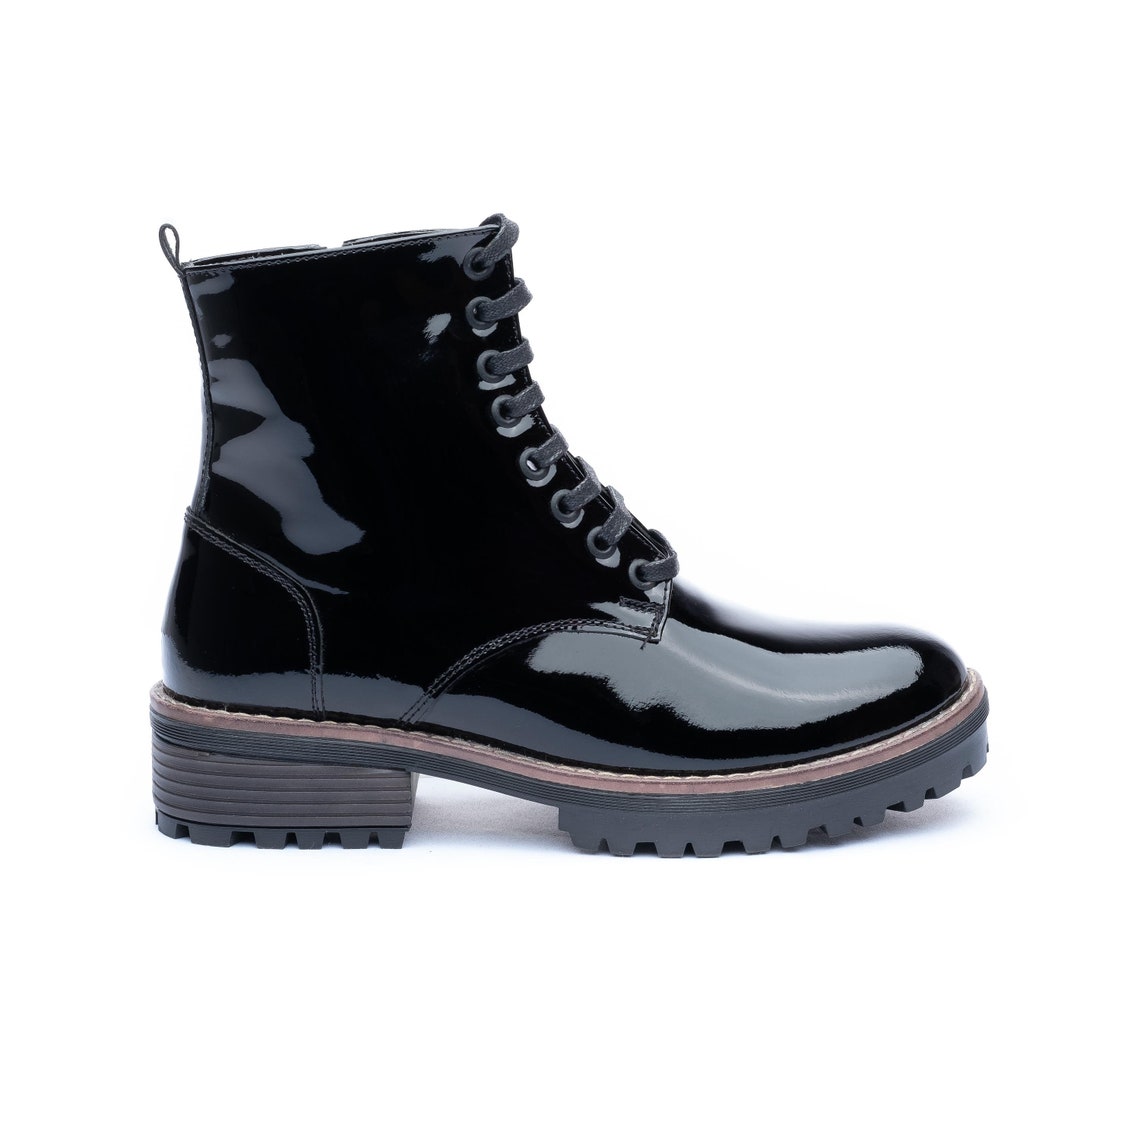 Patent leather boots combat boots women black platform | Etsy